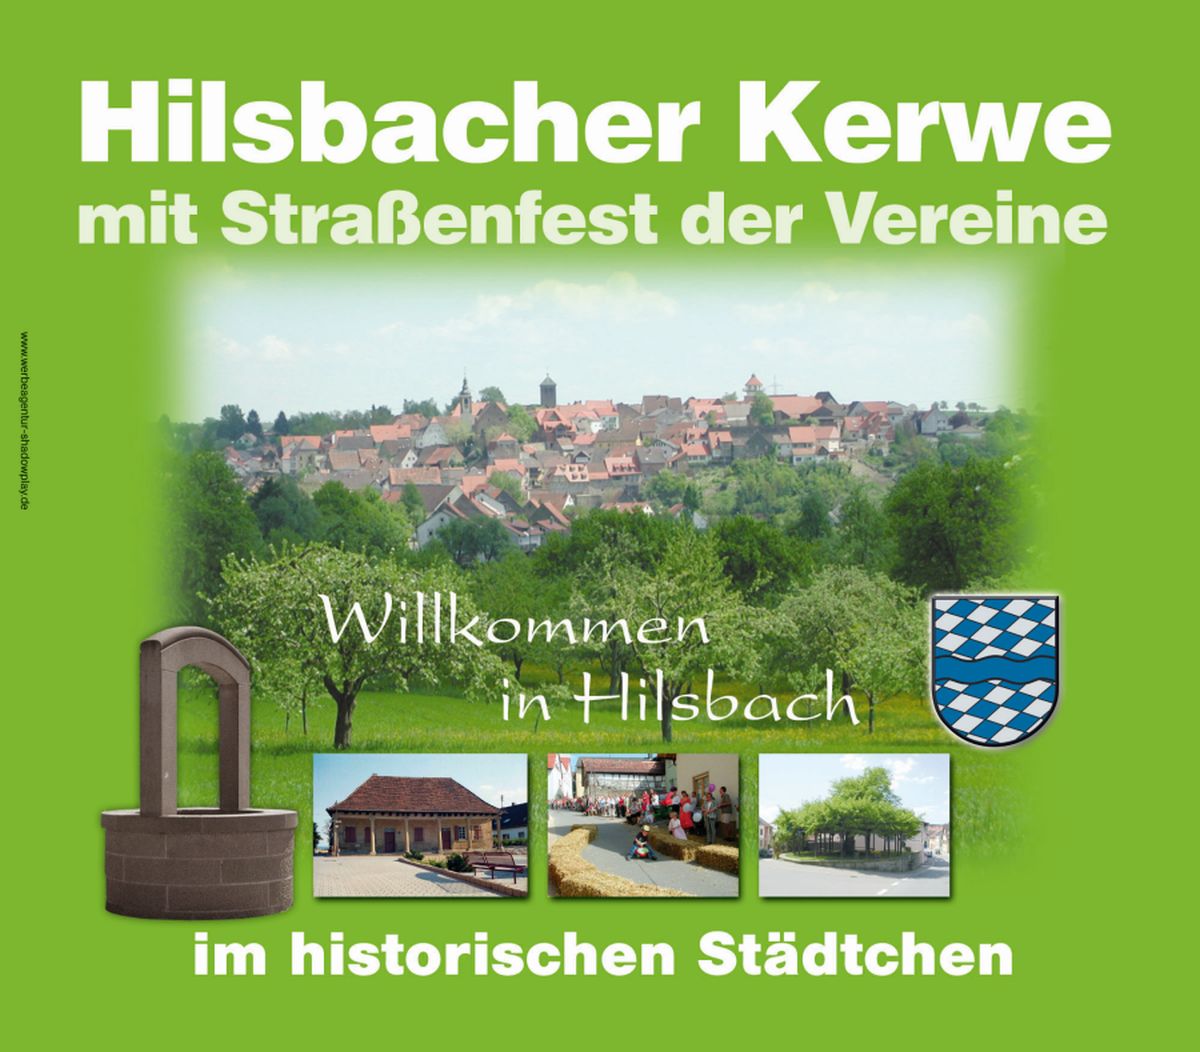 Unterhaltung und Ausstellungen zur Hilsbacher Kerwe